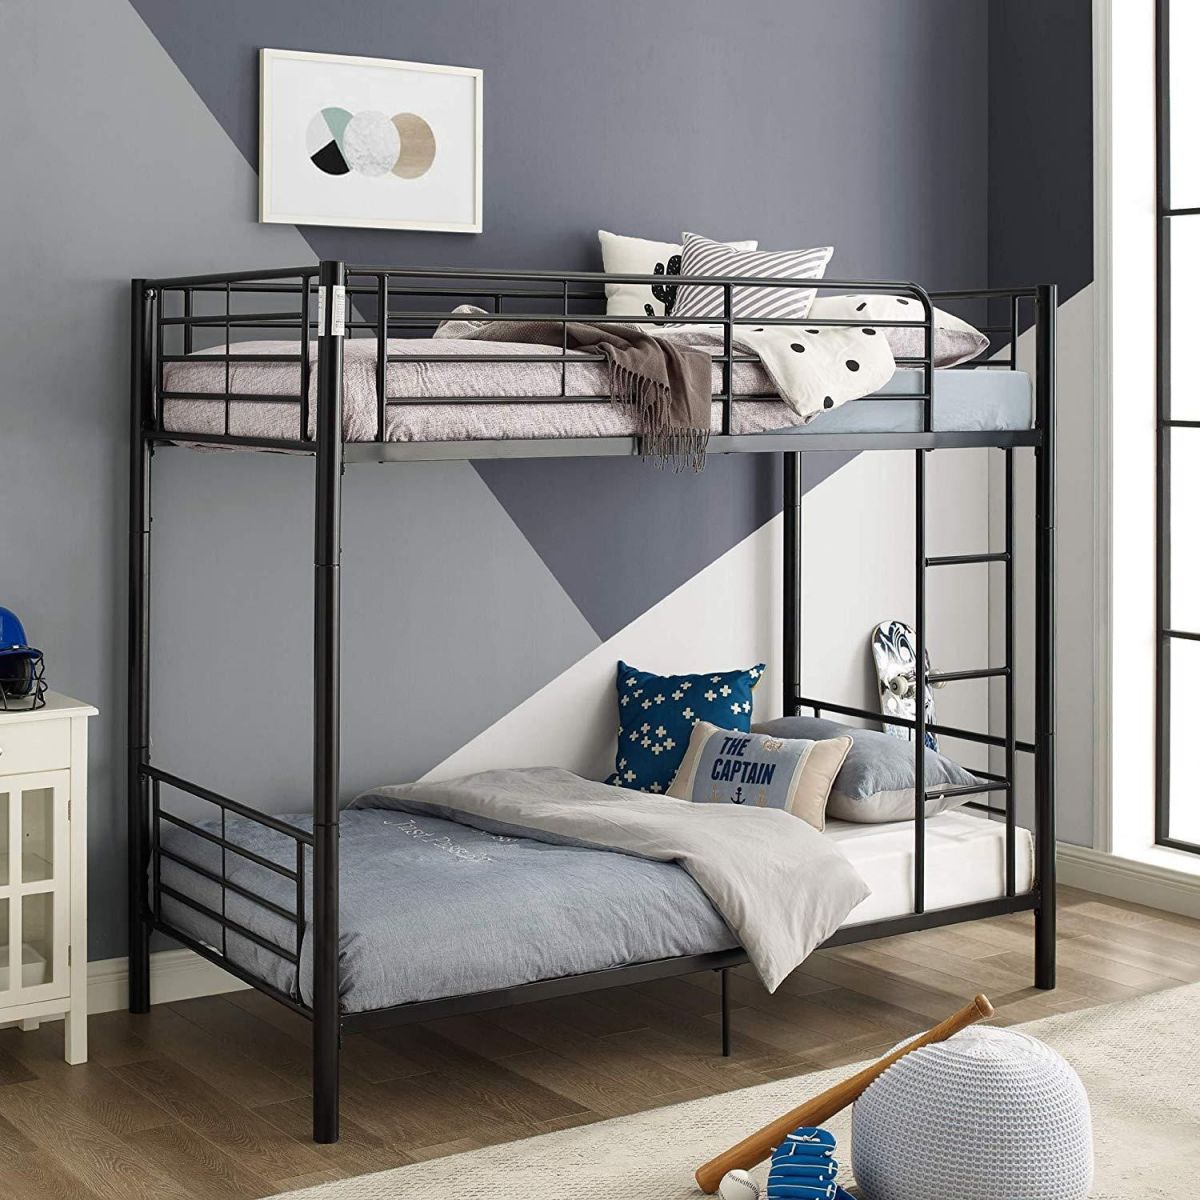 Mẫu giường hai tầng bằng sắt dành cho bé gái đơn giản 